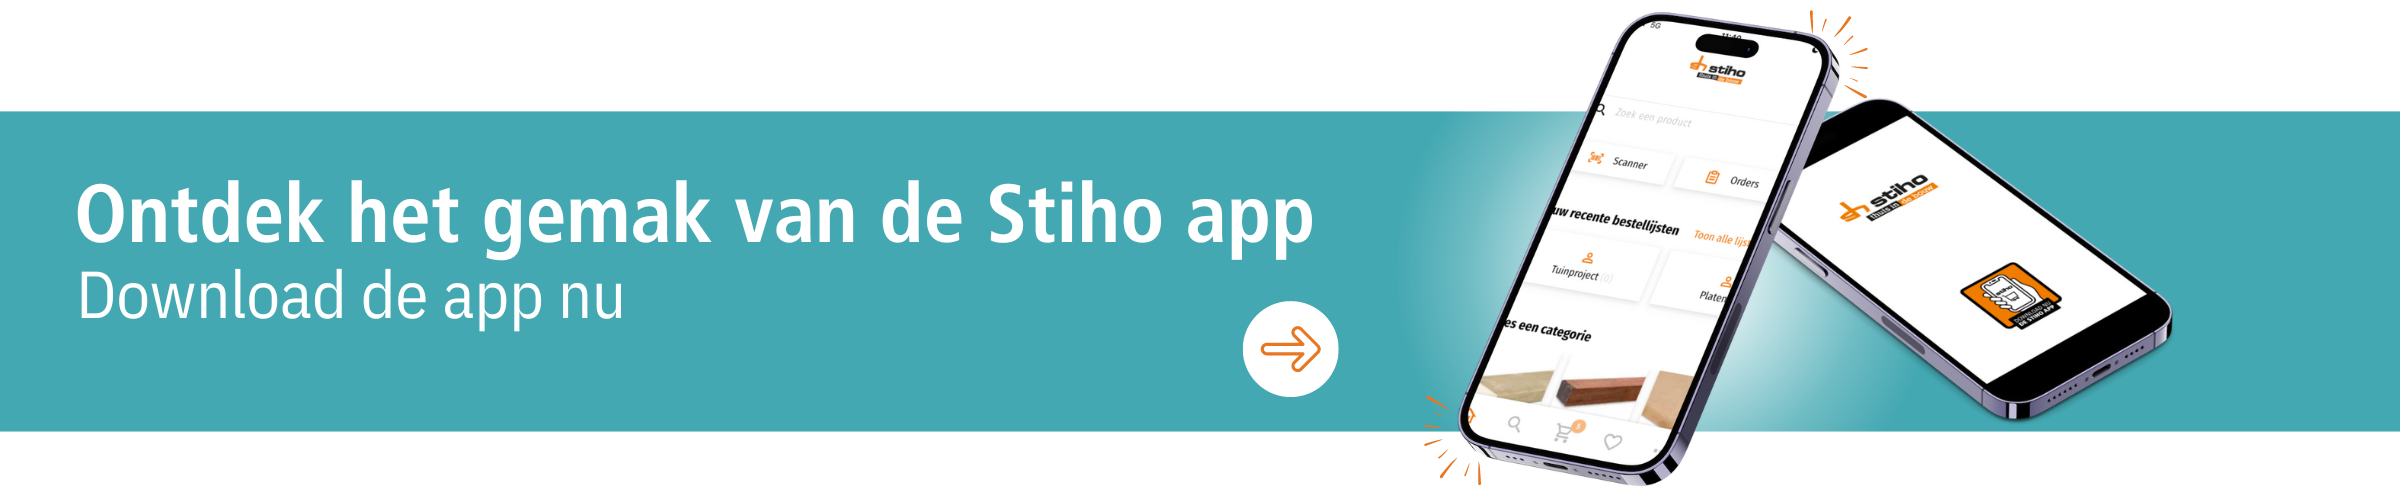 Download de Stiho app